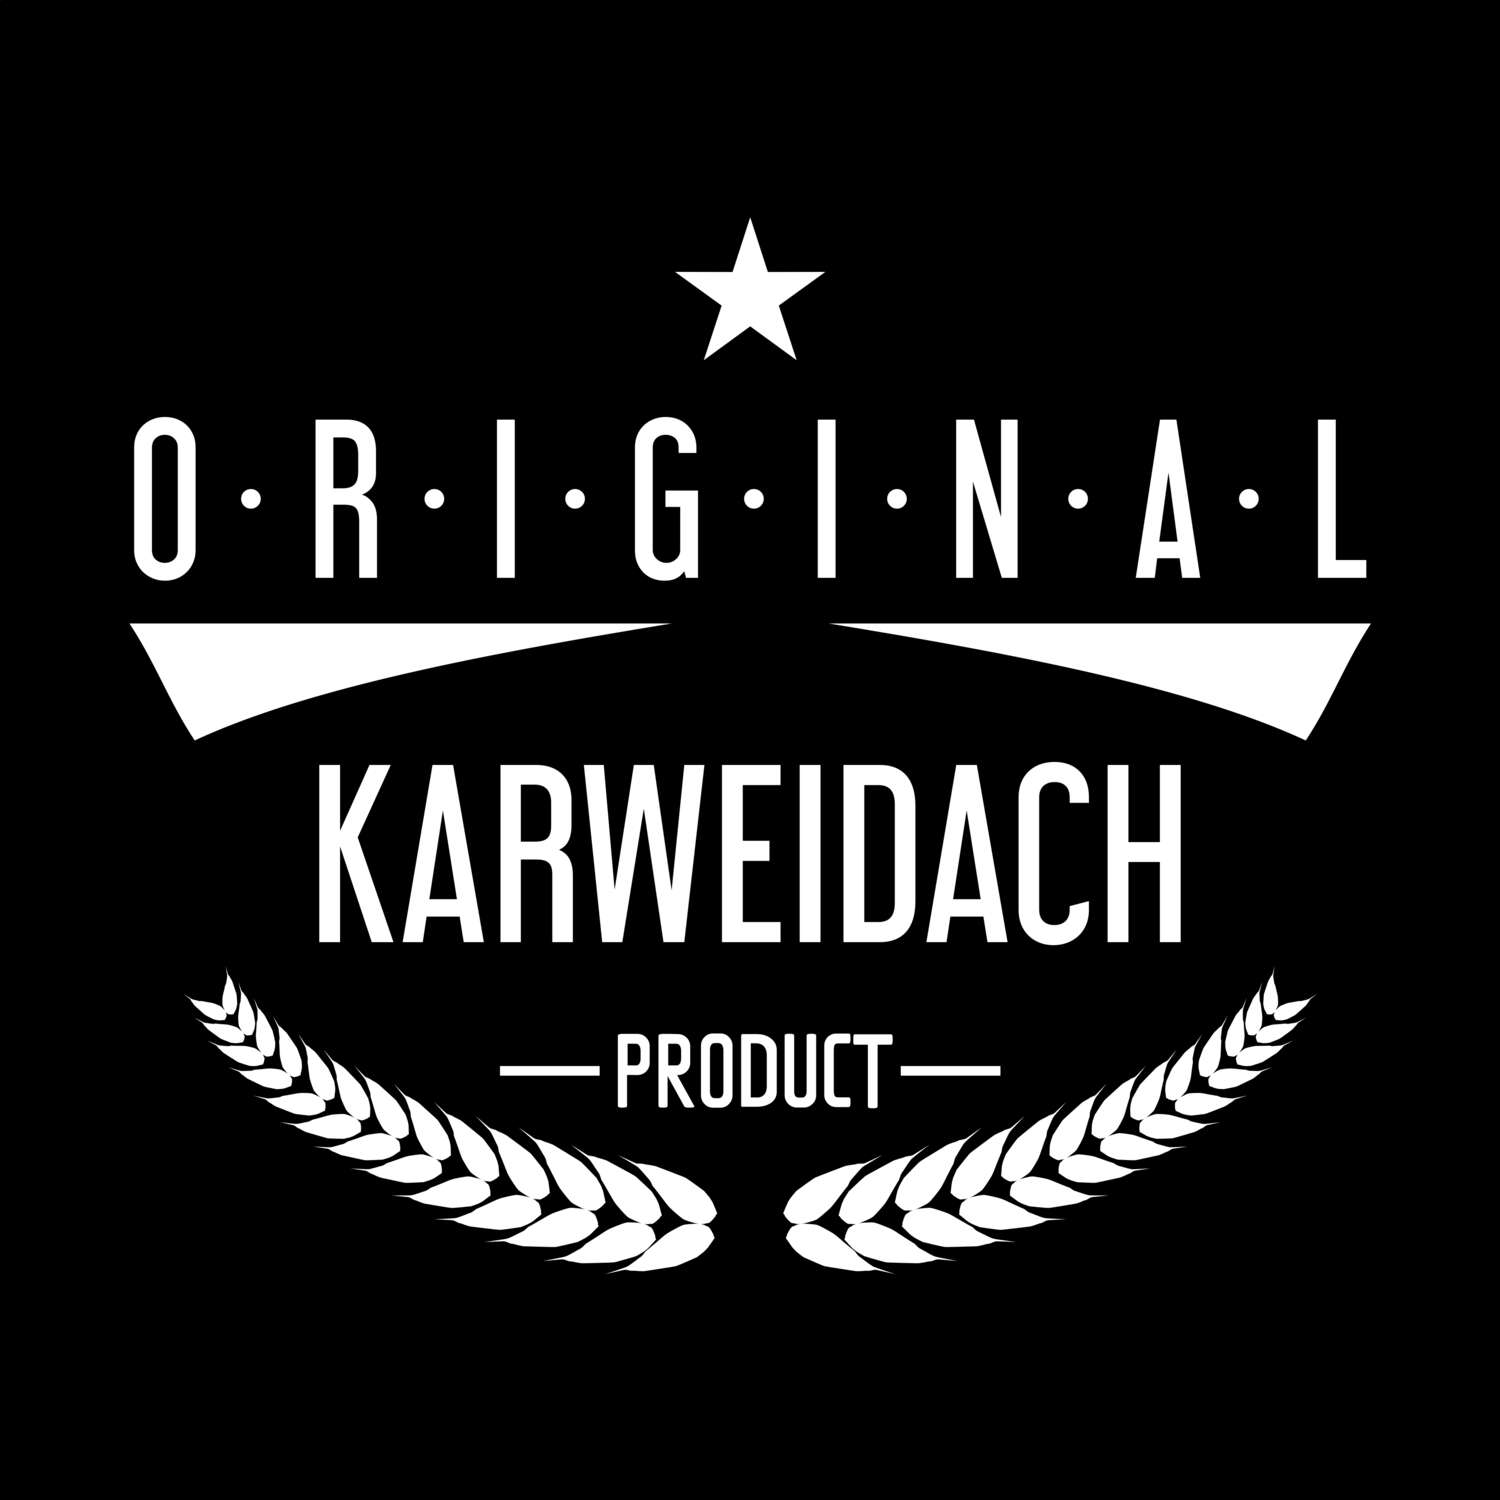 Karweidach T-Shirt »Original Product«